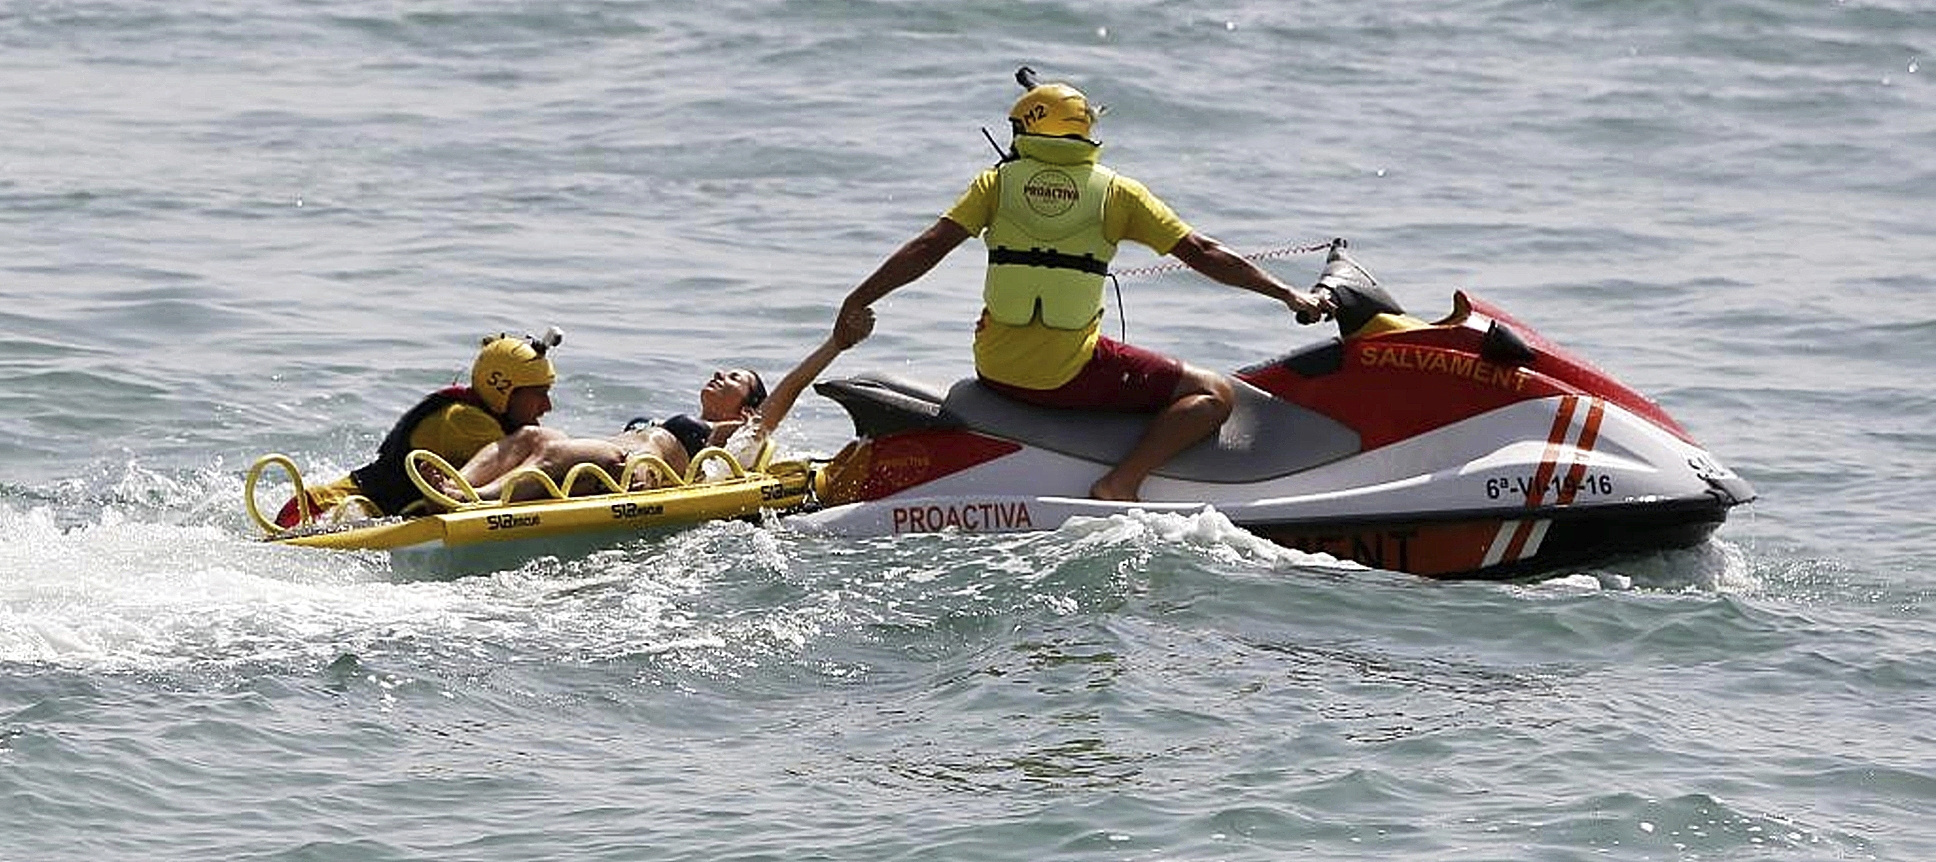 Simulacro de rescate de ahogados realizado en la playa del Postiguet, en Alicante.